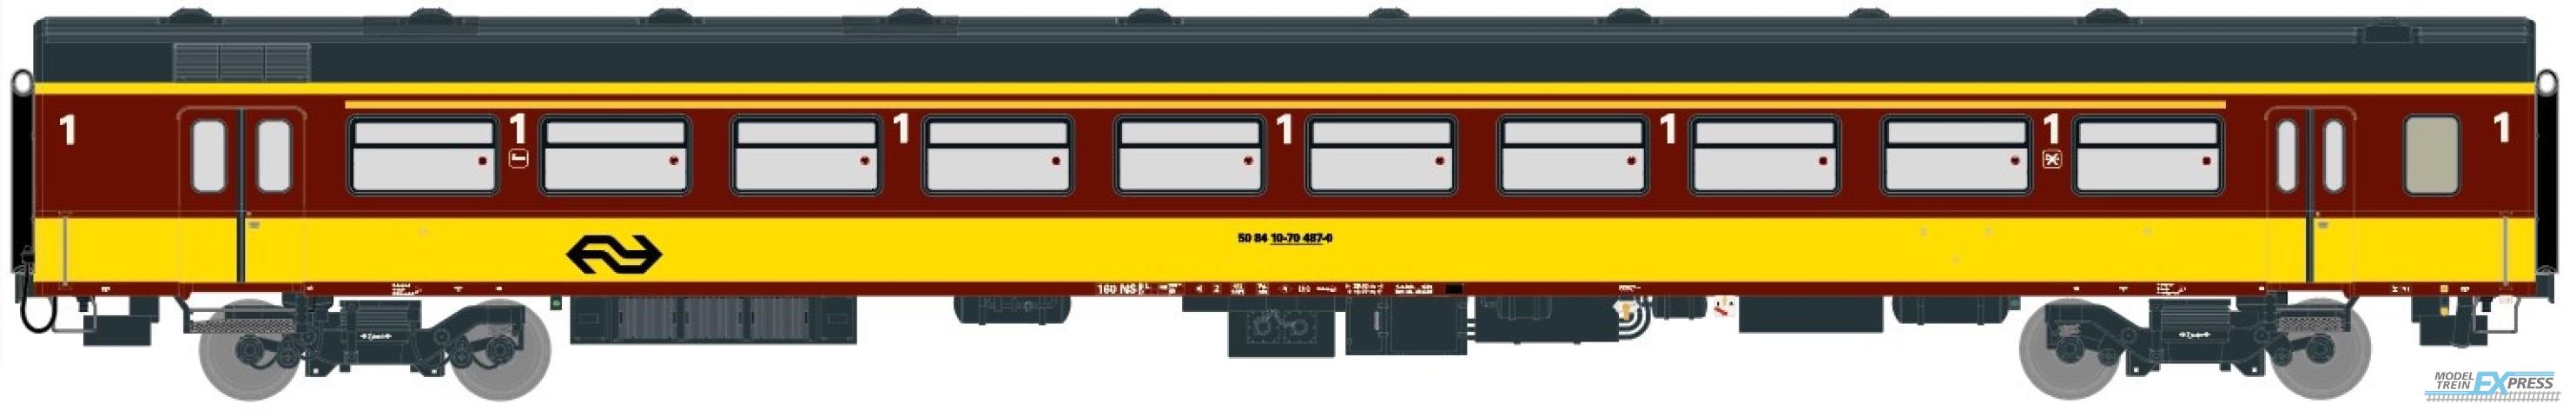 Exact-train 11168 NS ICR (Originalversion) für den Beneluxzug nach Belgien Reisezugwagen A ( Farbe Gelb / Rot) mit Beleuchtung und Figuren, Ep. IV